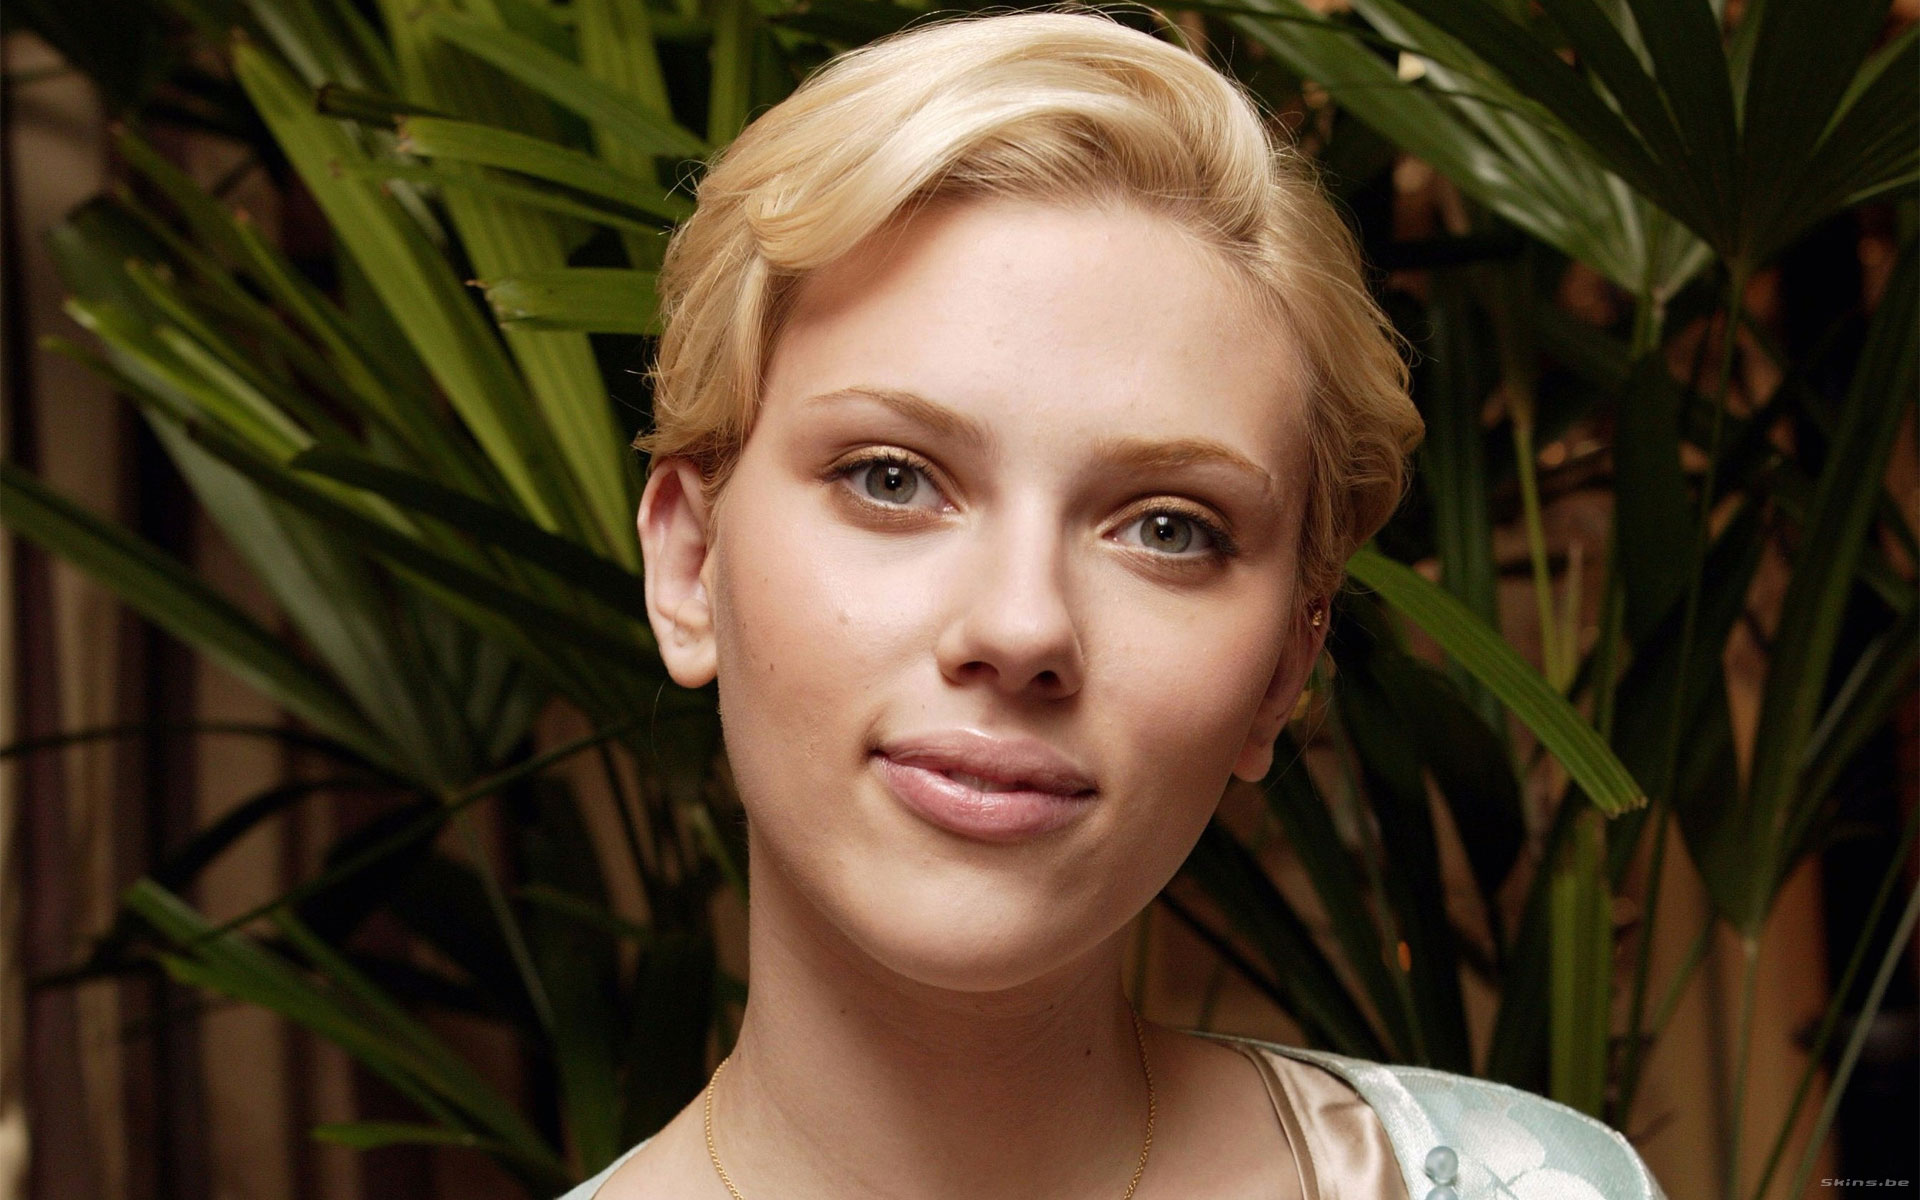 blondes, women, Scarlett Johansson, actress, faces - desktop wallpaper